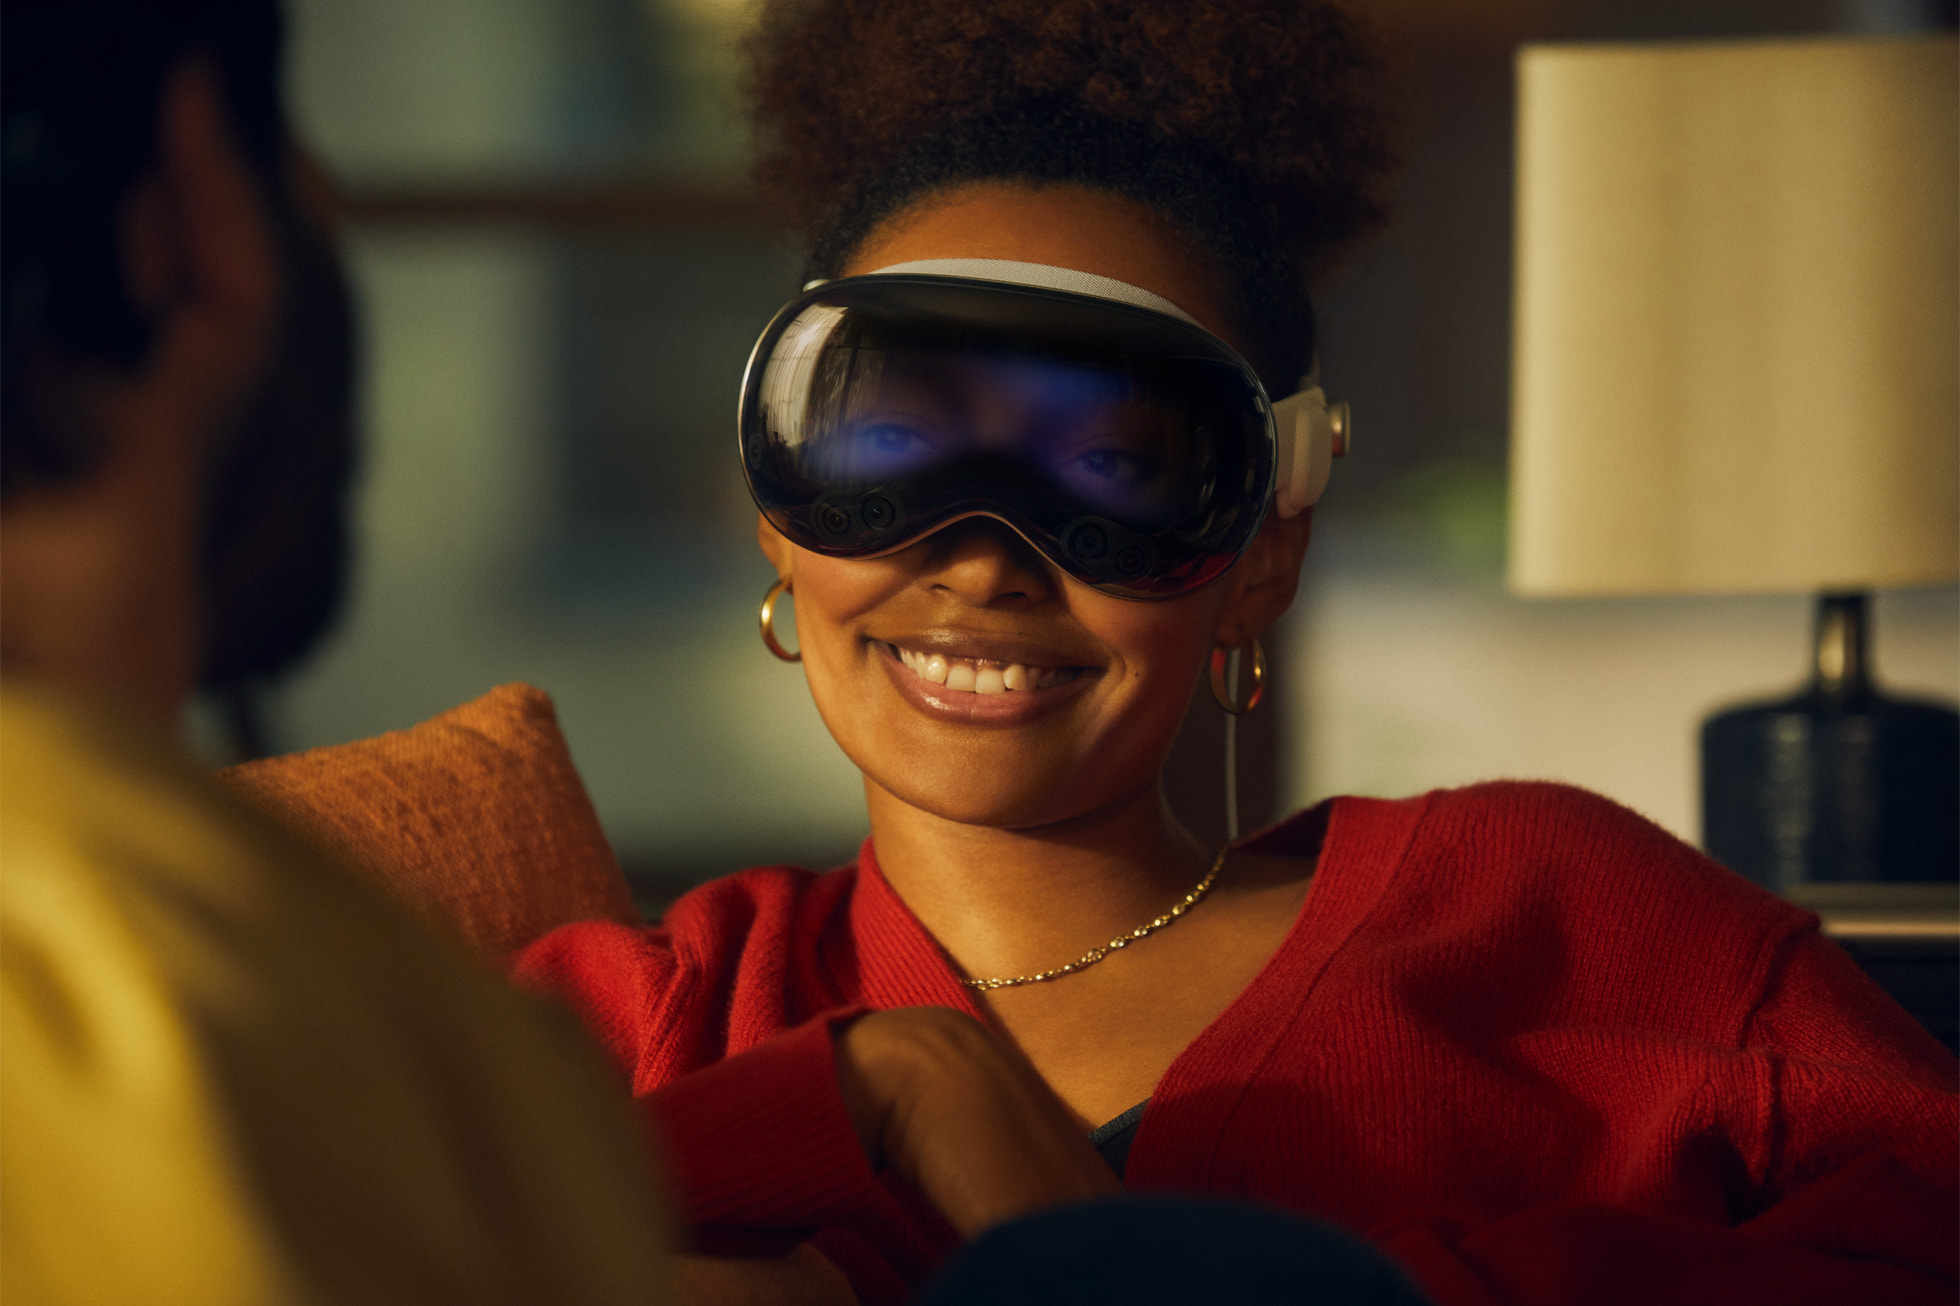 Las Vision Pro pueden mostrar los ojos del usuario que las lleva en una representación en 3D que es sin duda desconcertante para los que miramos desde fuera